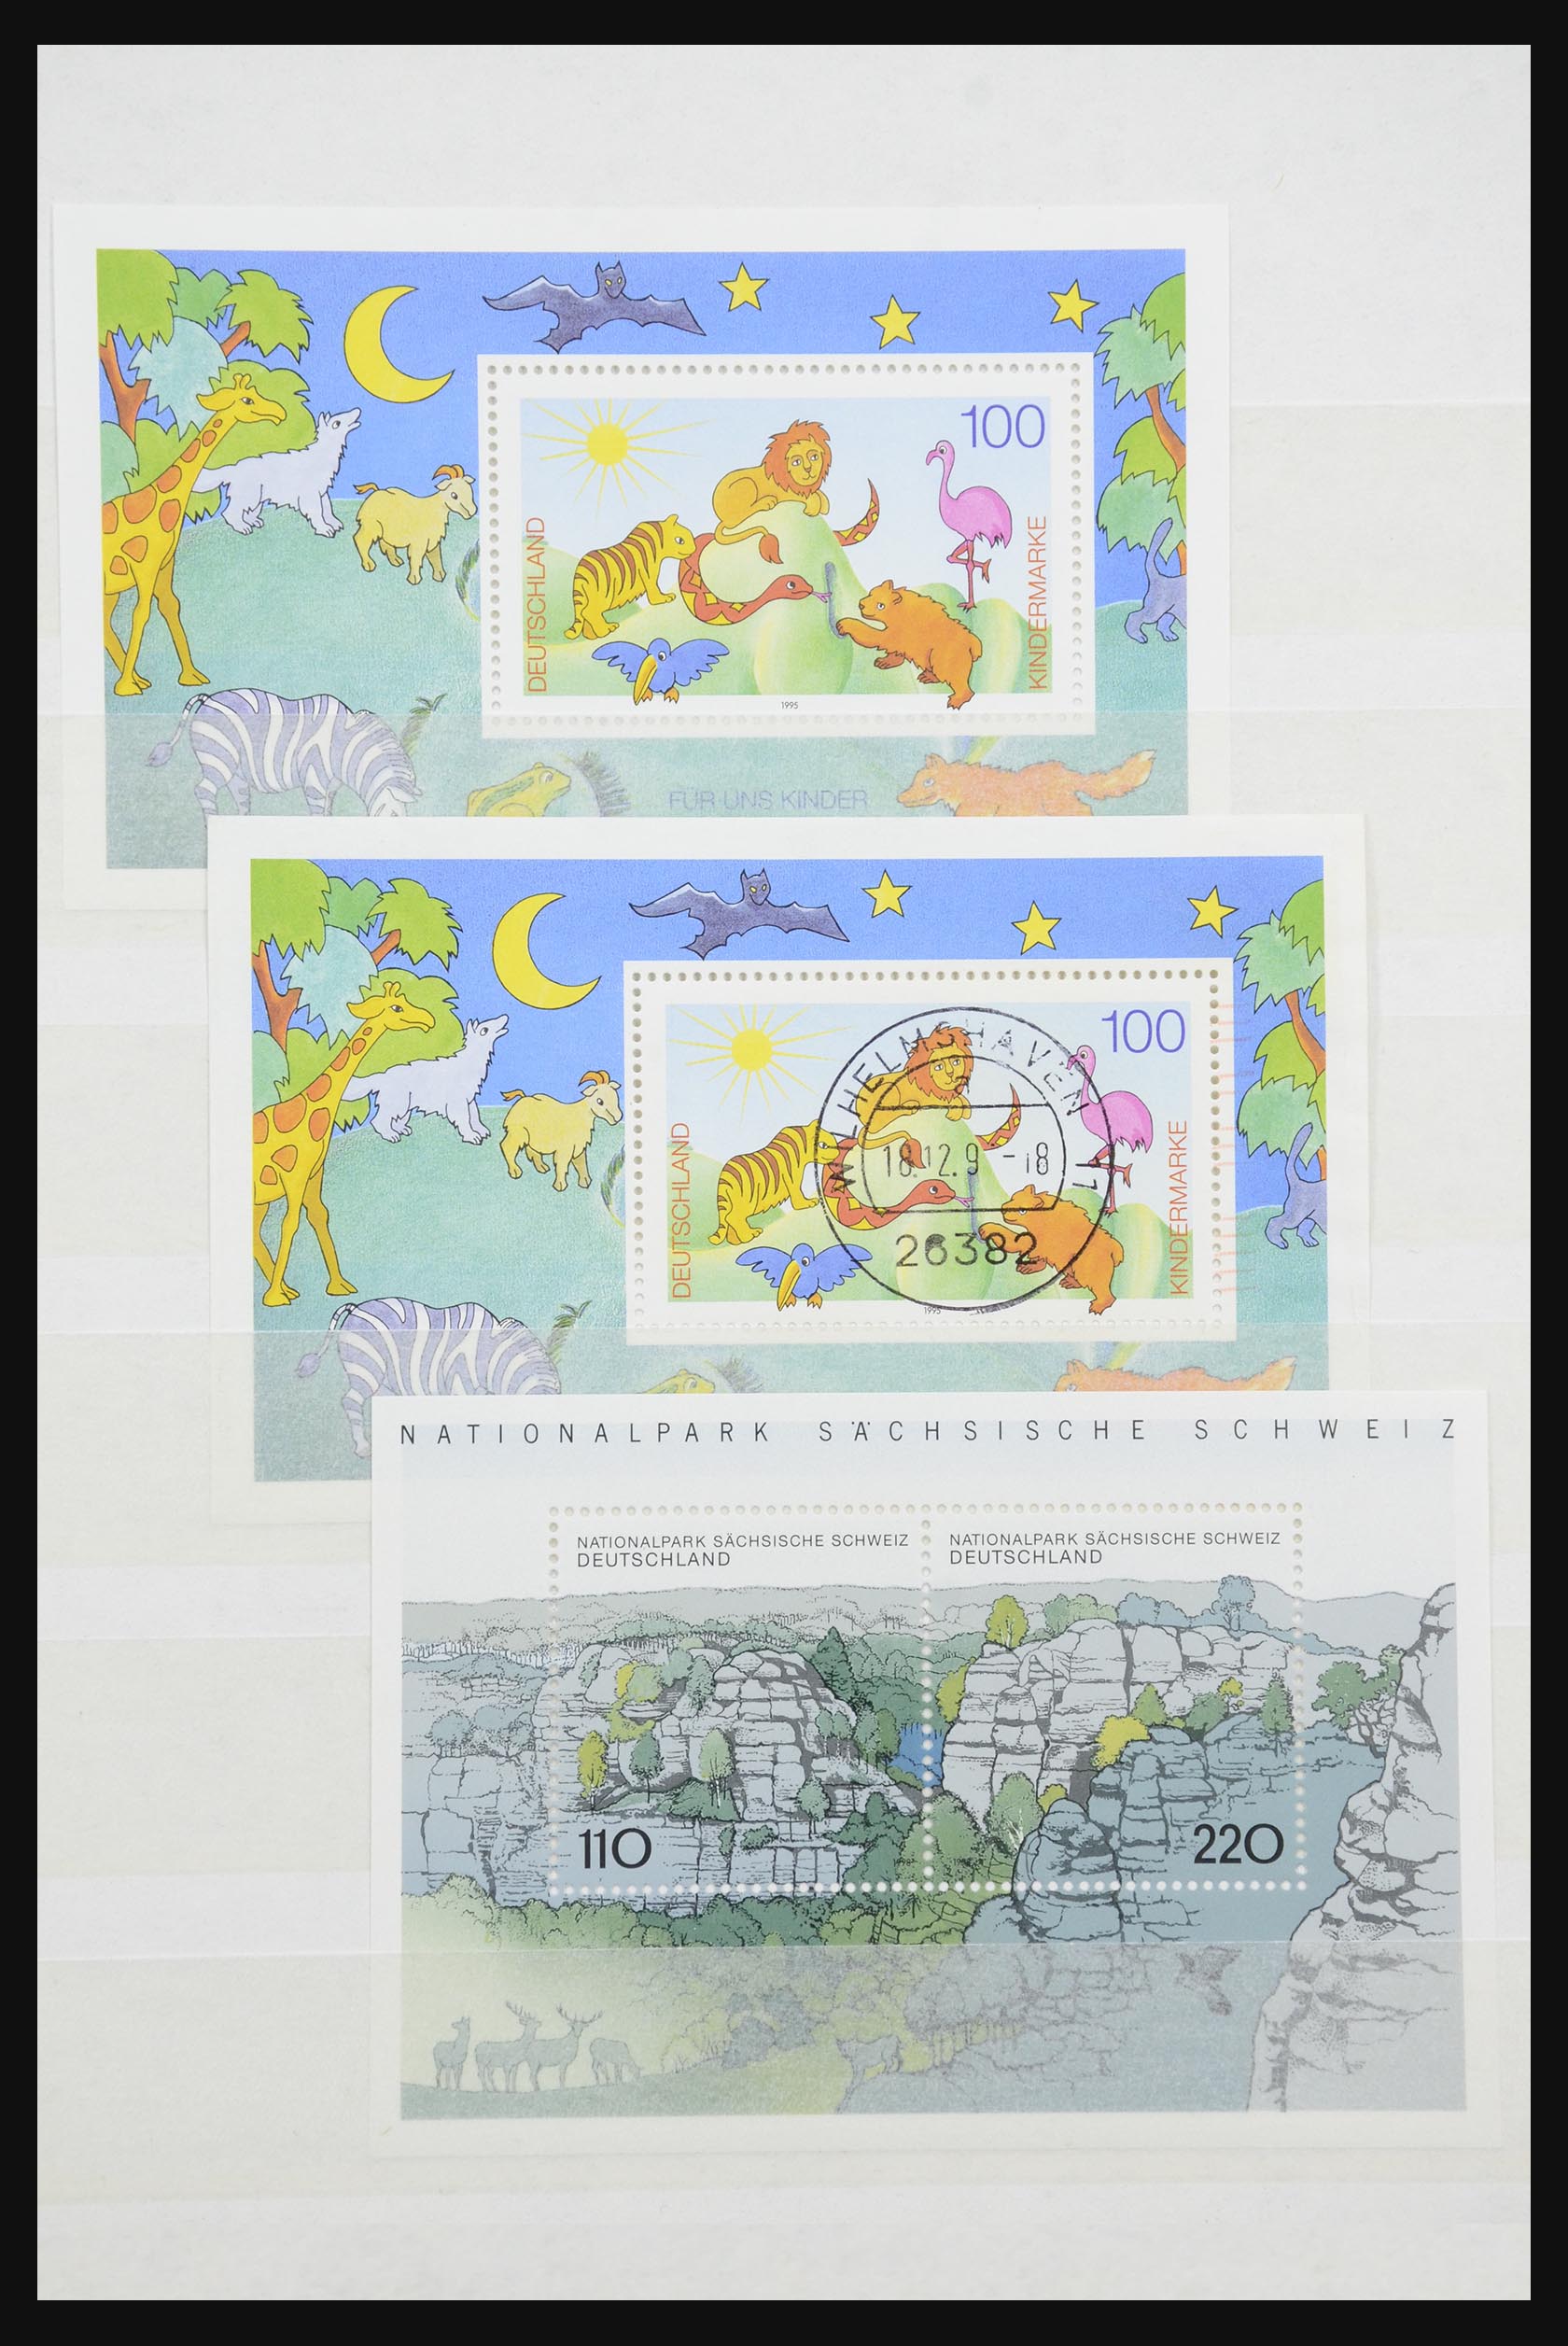 32050 048 - 32050 Bundespost speciale blokken 1980-2010.